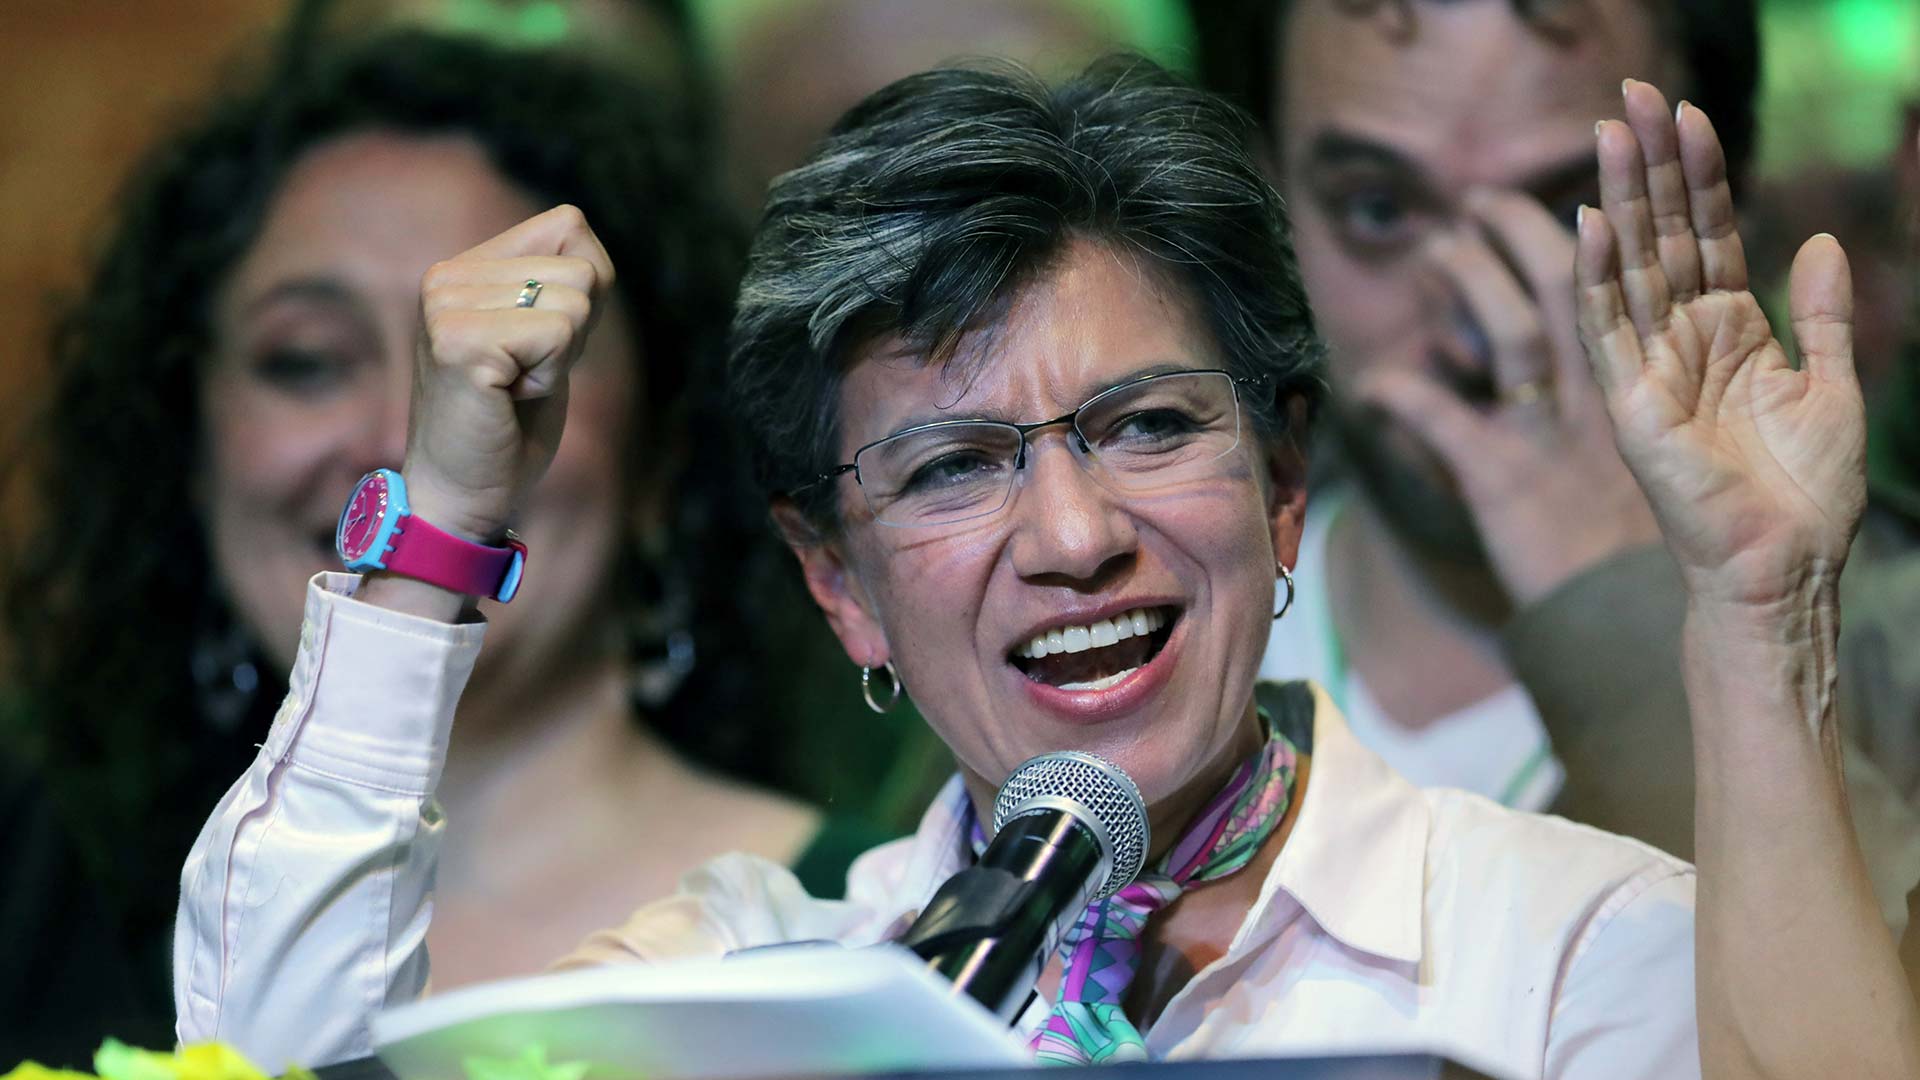 De origen humilde, lesbiana y firme contra la corrupción: Claudia López, elegida alcaldesa de Bogotá